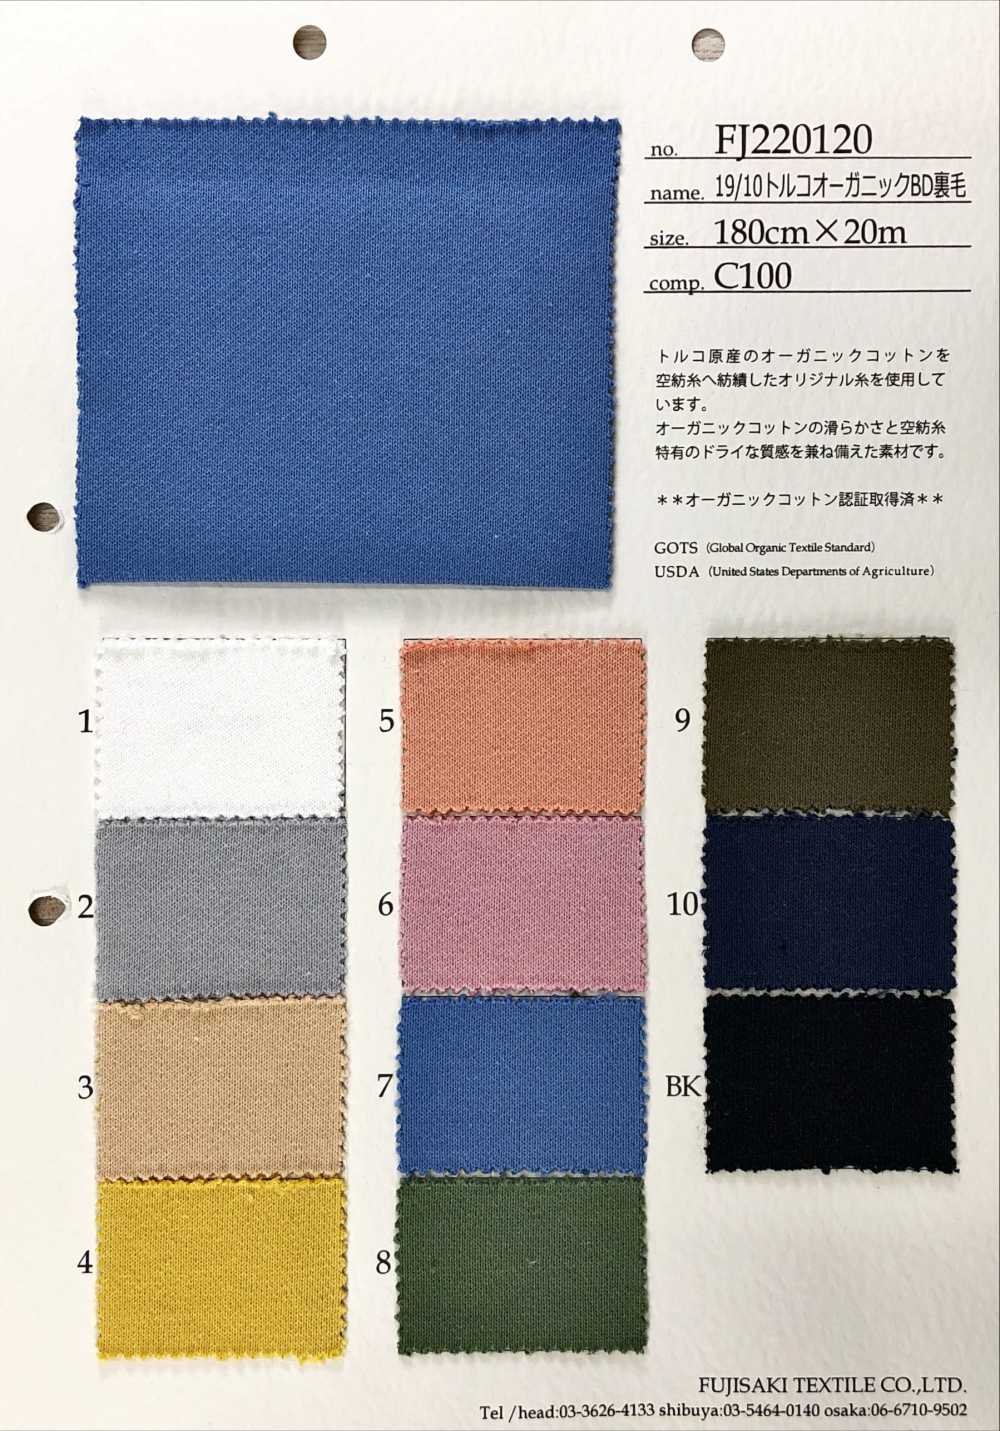 FJ220120 19/10 Polaire BD Biologique Turque[Fabrication De Textile] Fujisaki Textile